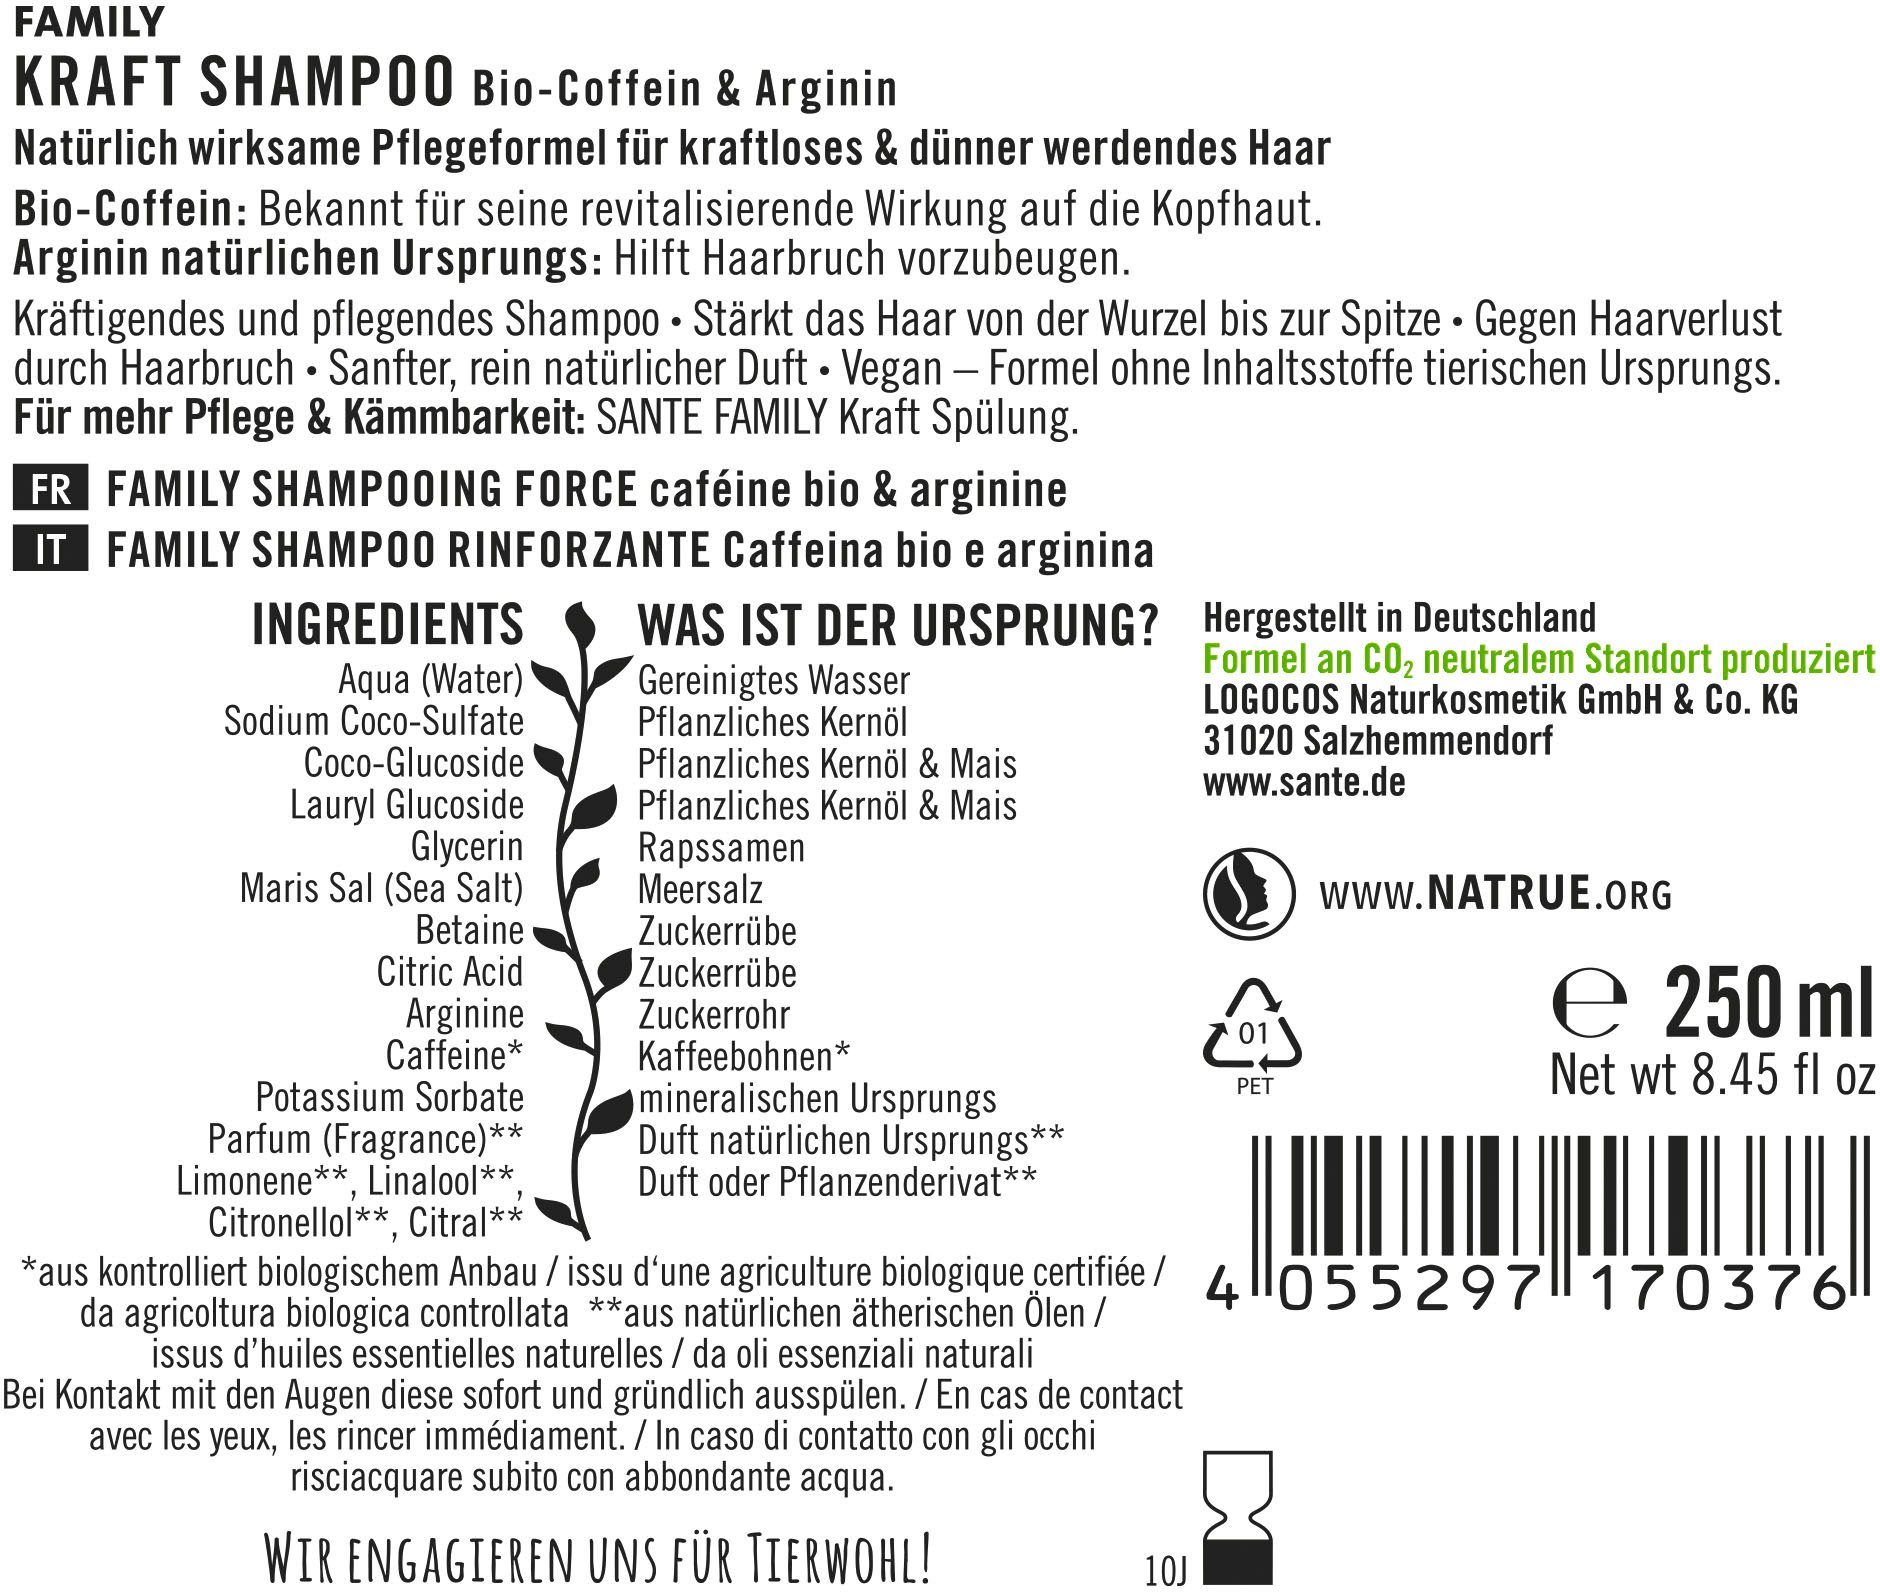 Haarshampoo Shampoo SANTE Kraft